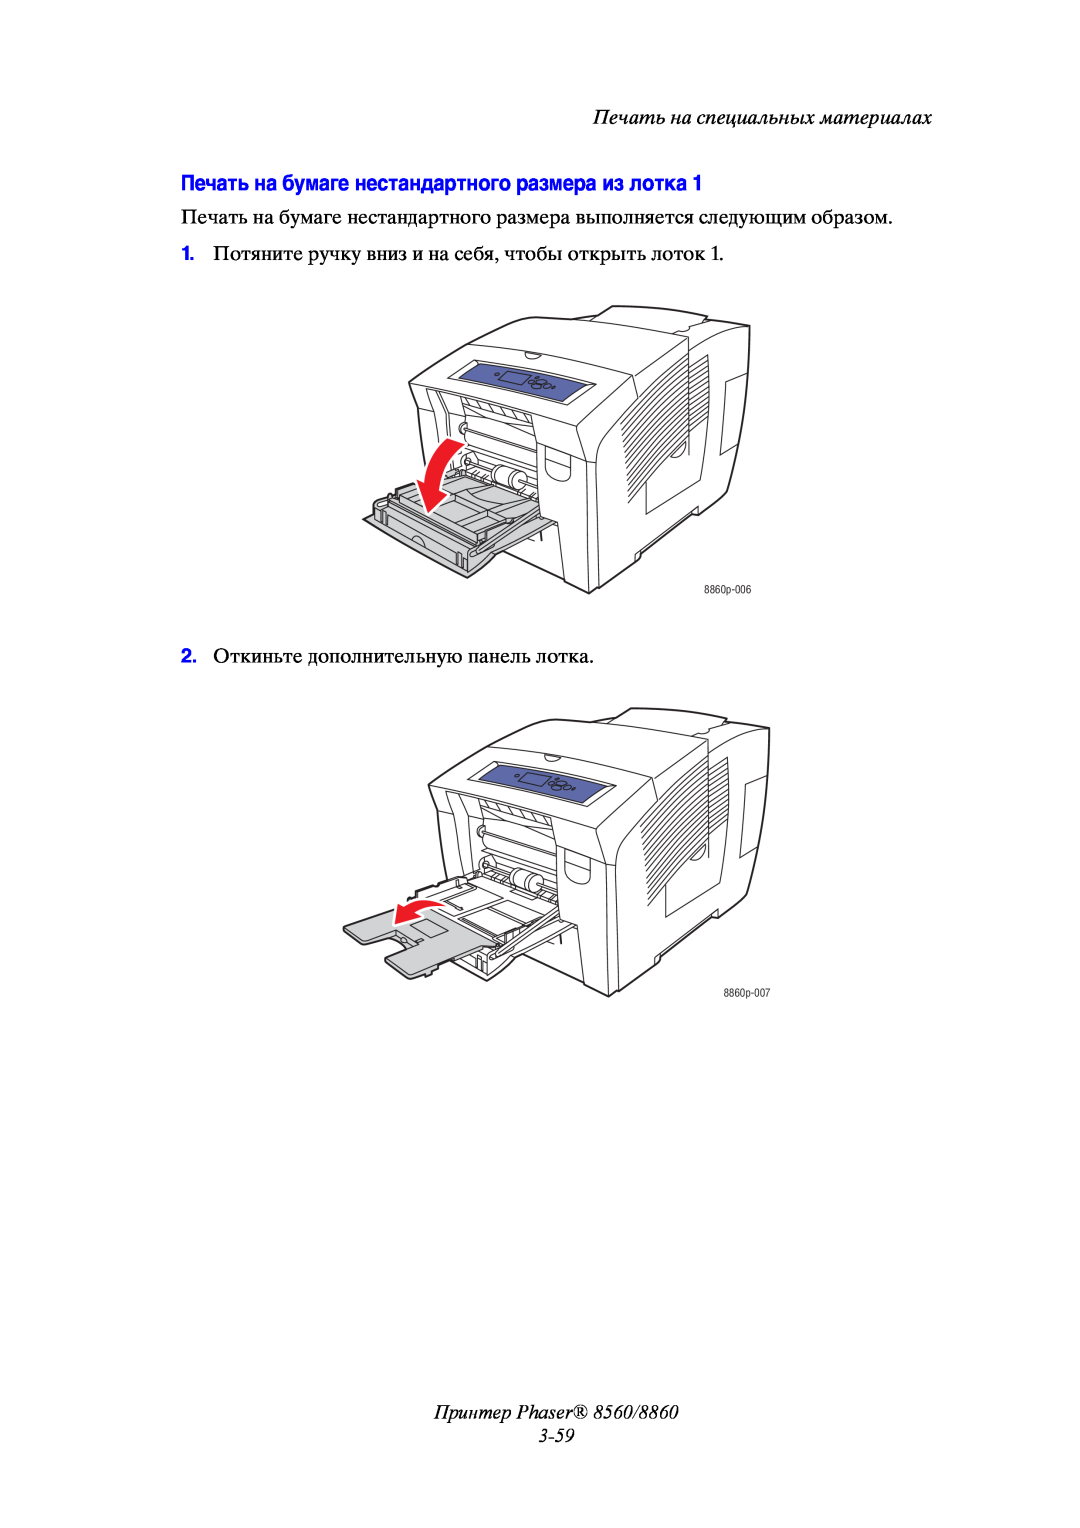 Xerox Печать на бумаге нестандартного размера из лотка, Принтер Phaser 8560/8860, Печать на специальных материалах 